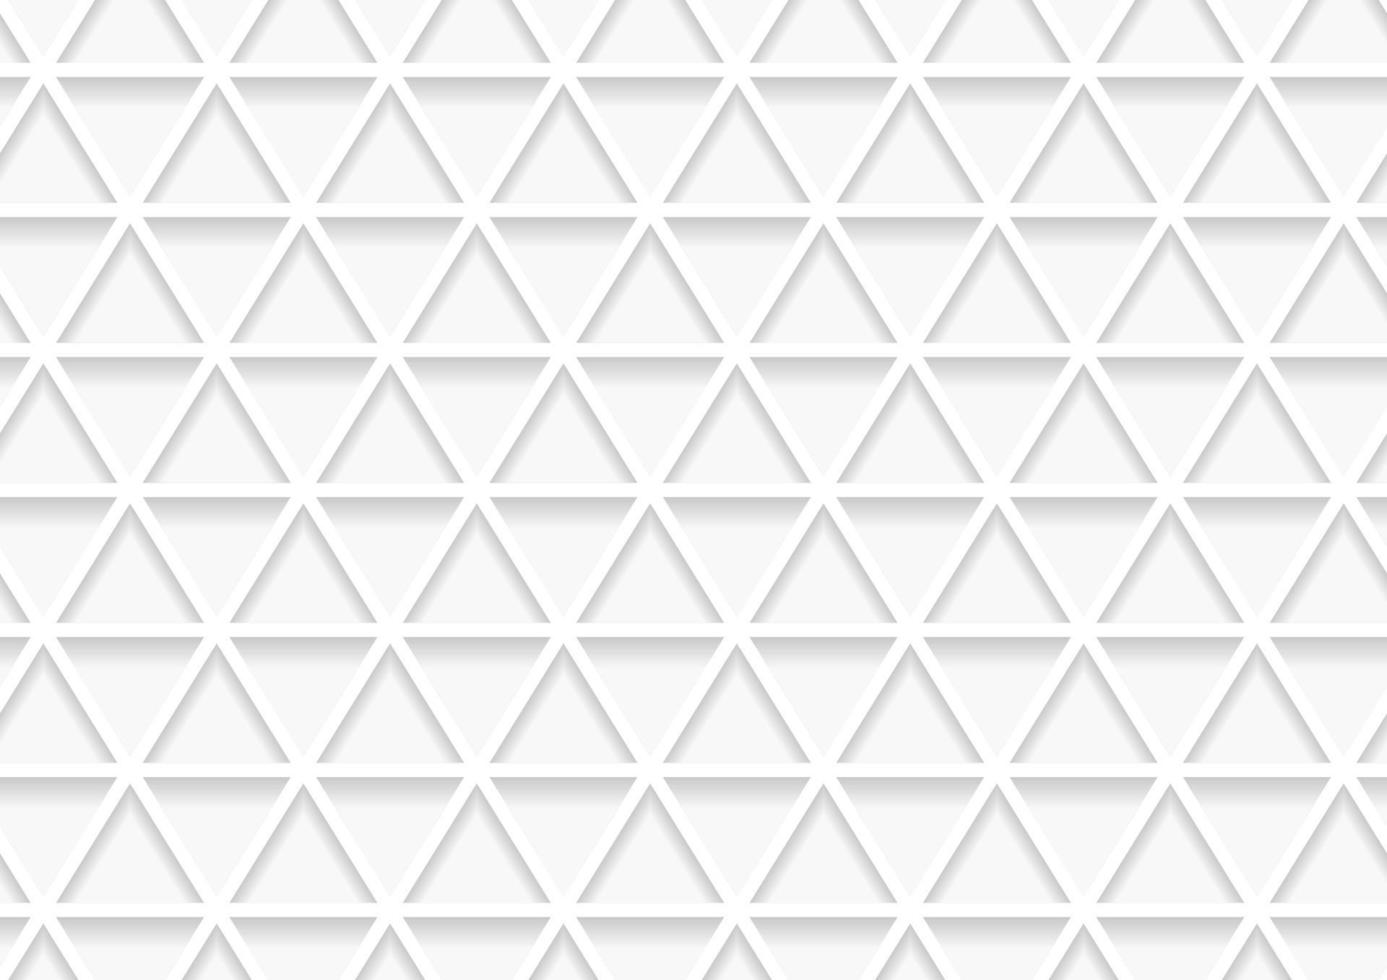 abstrakt vit och grå geometrisk bakgrundsstruktur vektor